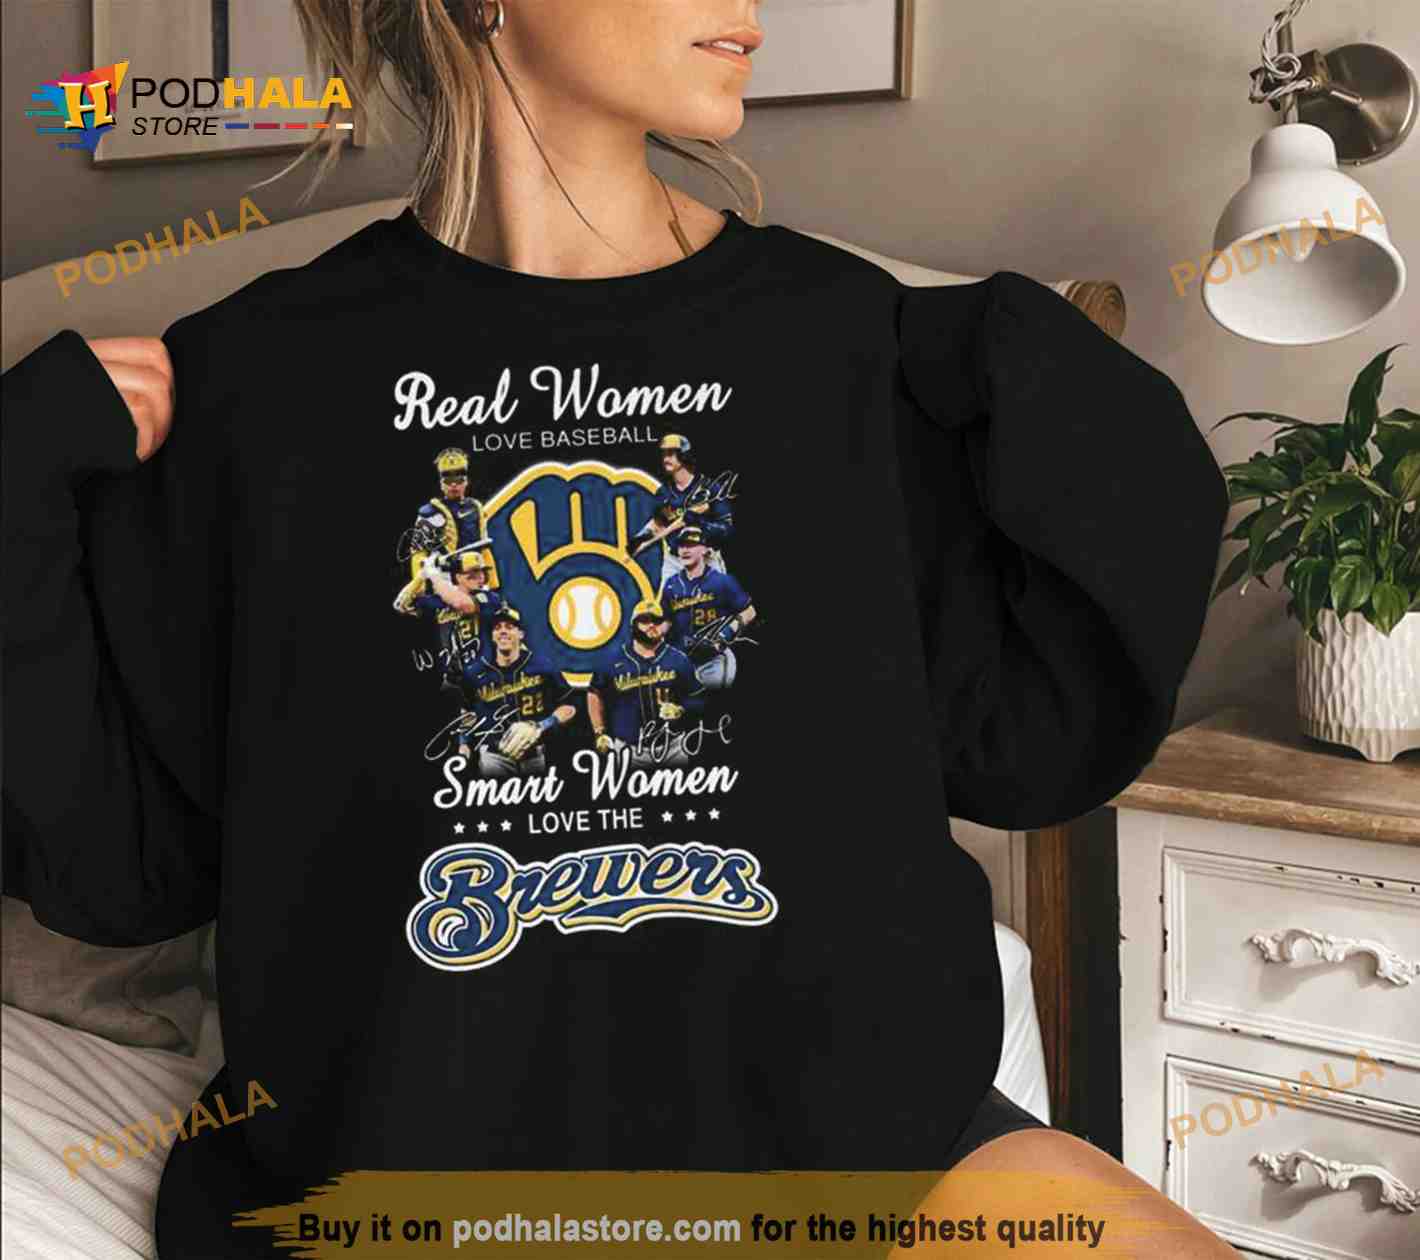 Official Real Women Love Baseball Smart Women Love Brewers Shirt